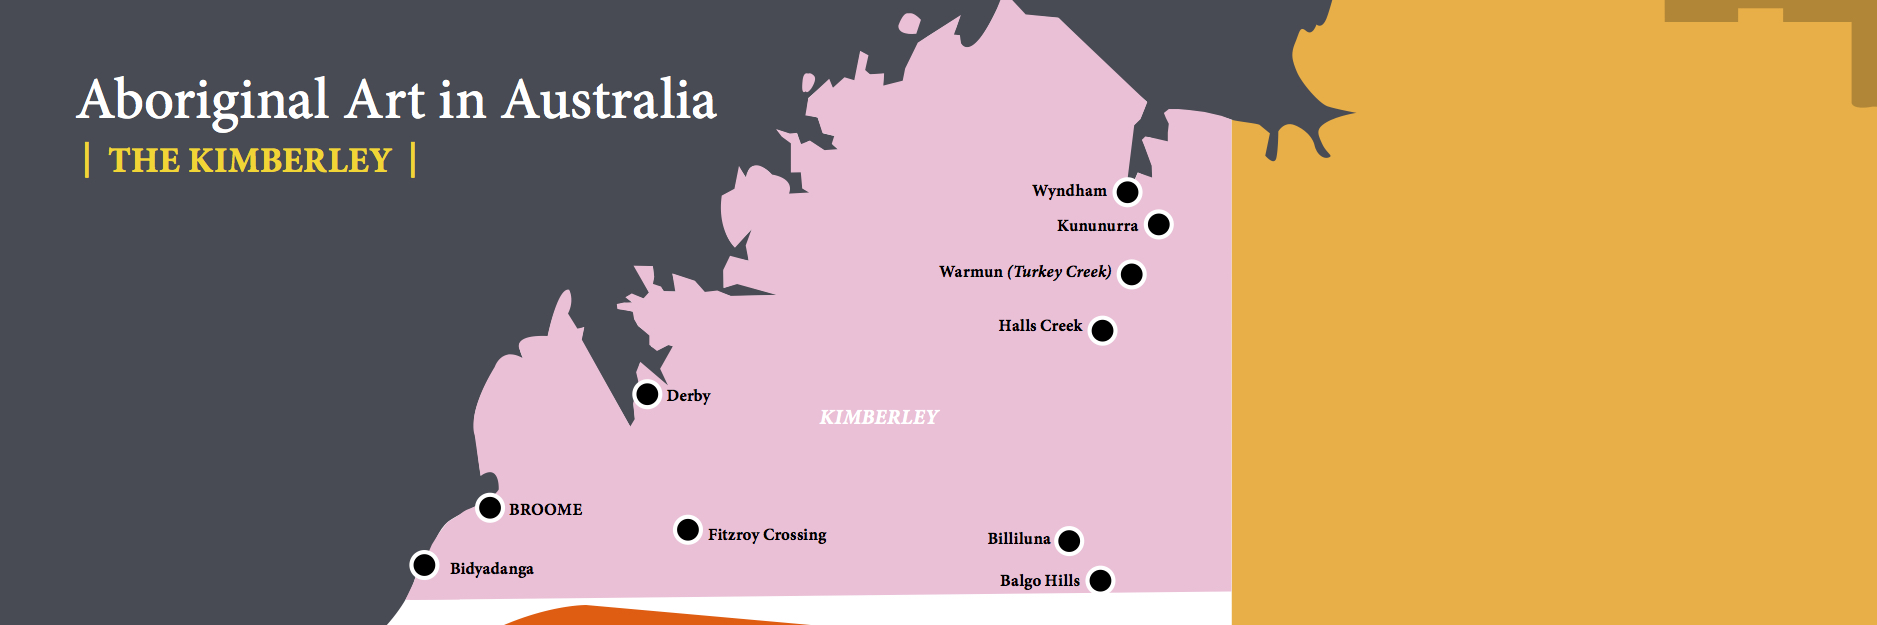 LDFA_Website Maps_8 copy - 3 The Kimberley